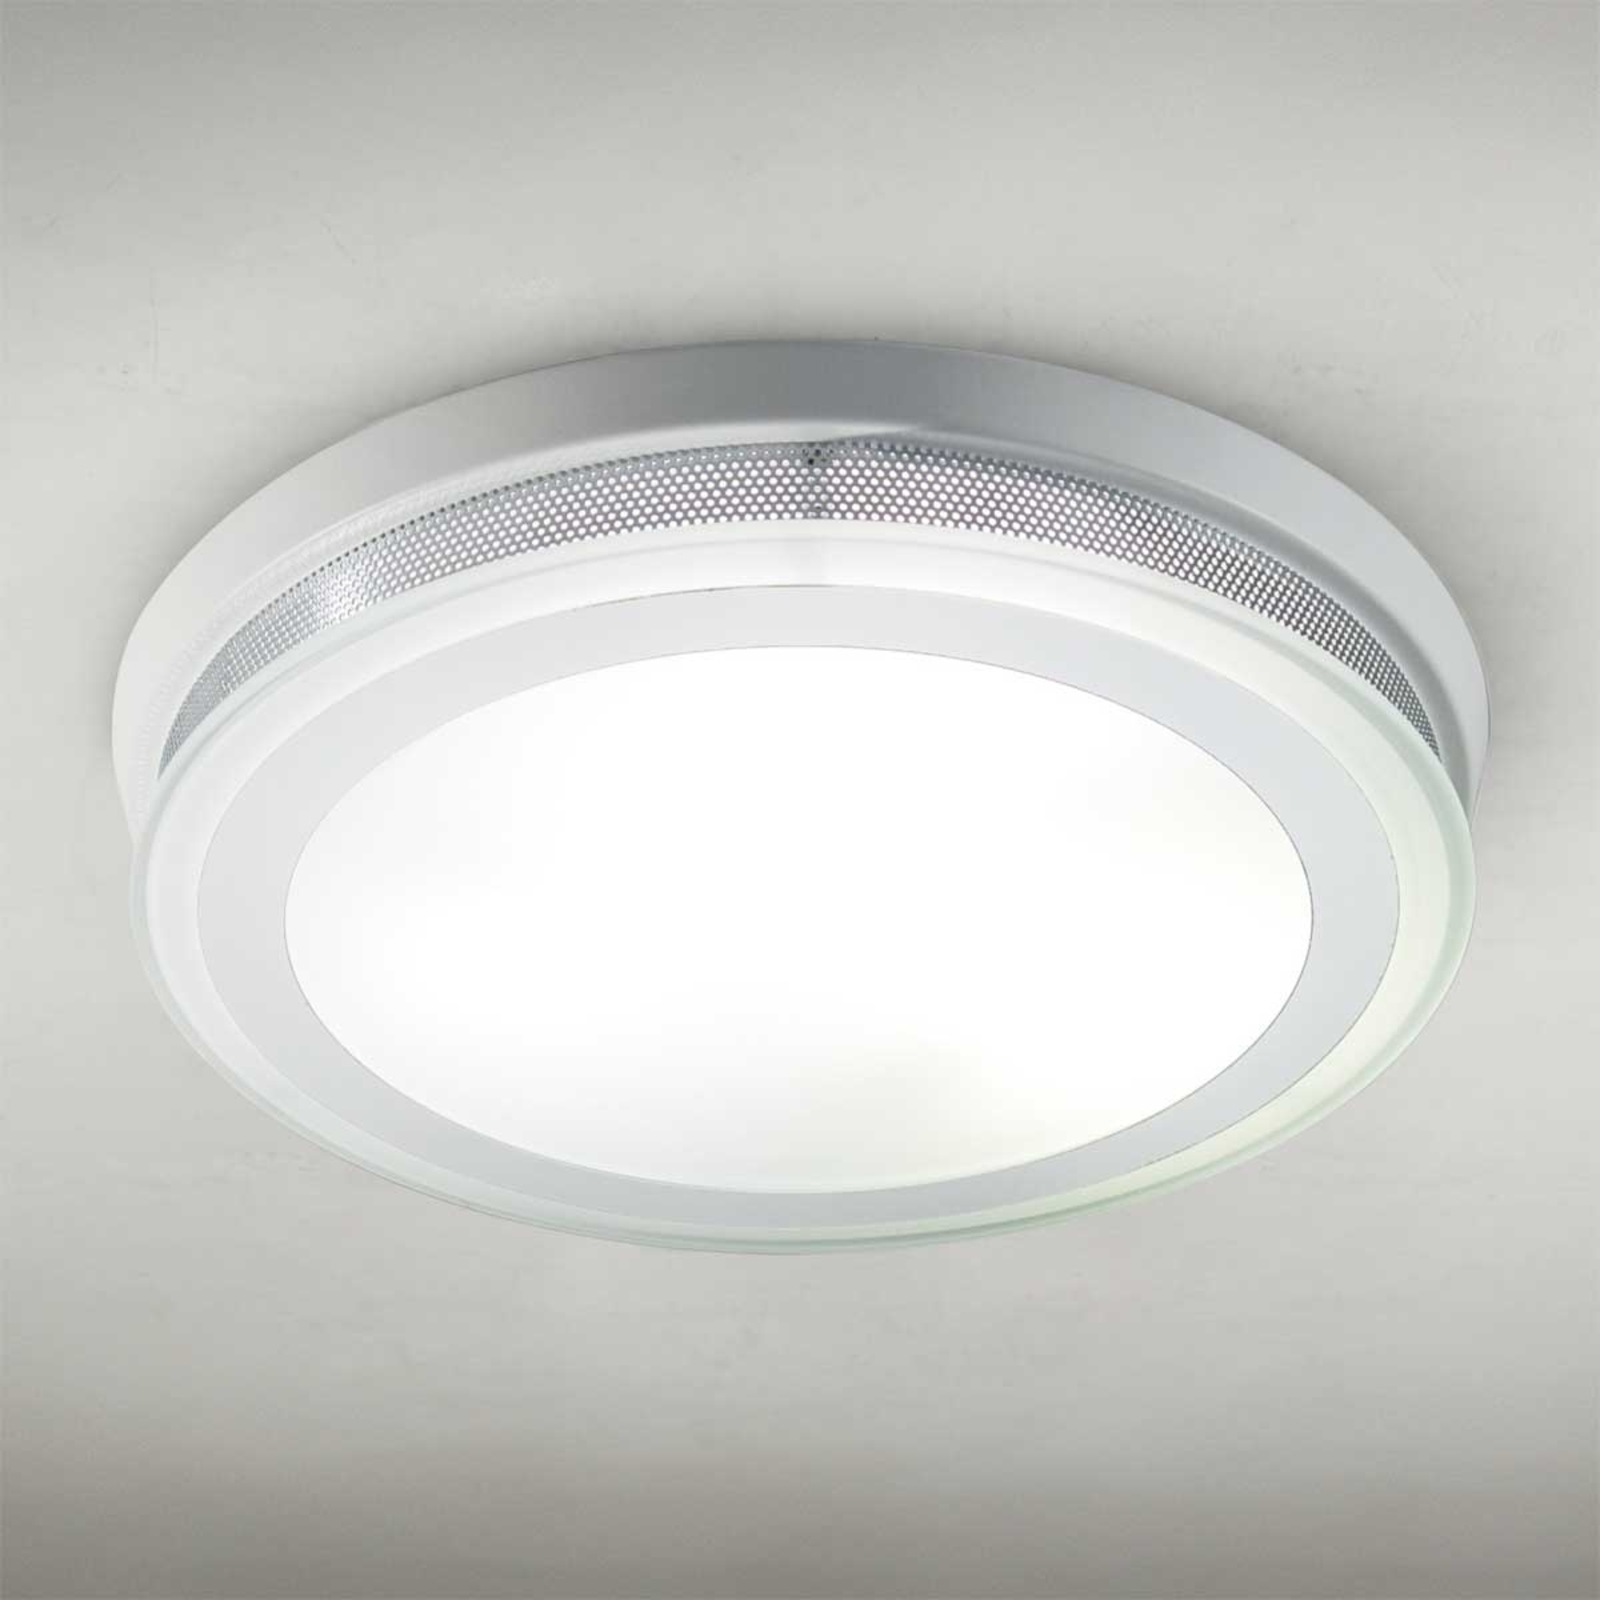 Ronde plafondlamp RING 9115, 37 cm, wit